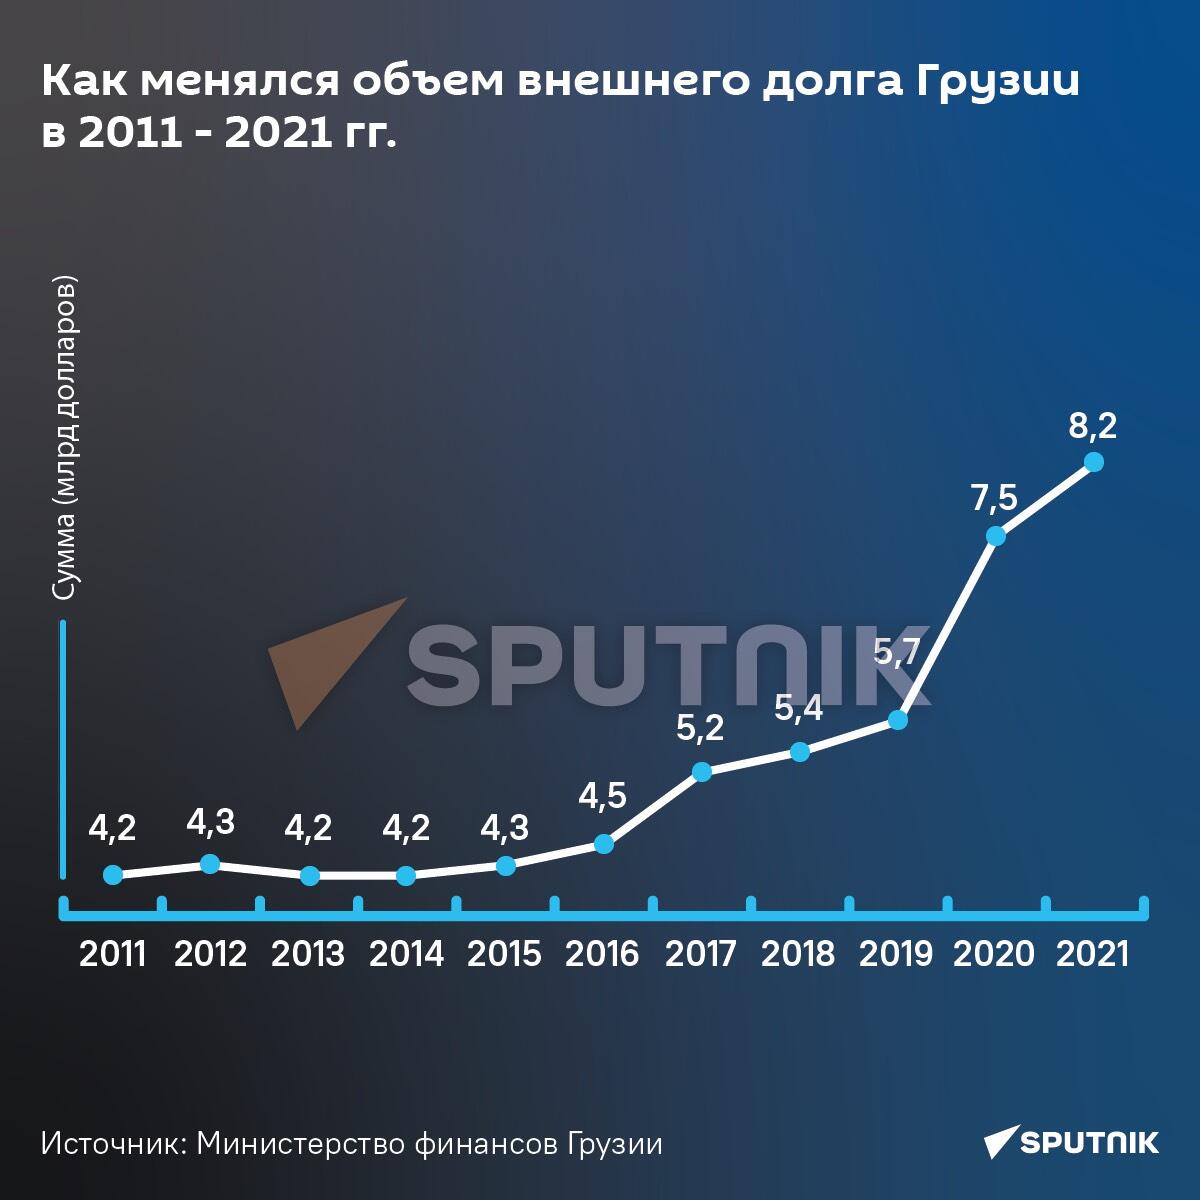 Как менялся объем внешнего долга Грузии в 2011 - 2021 года - Sputnik Грузия